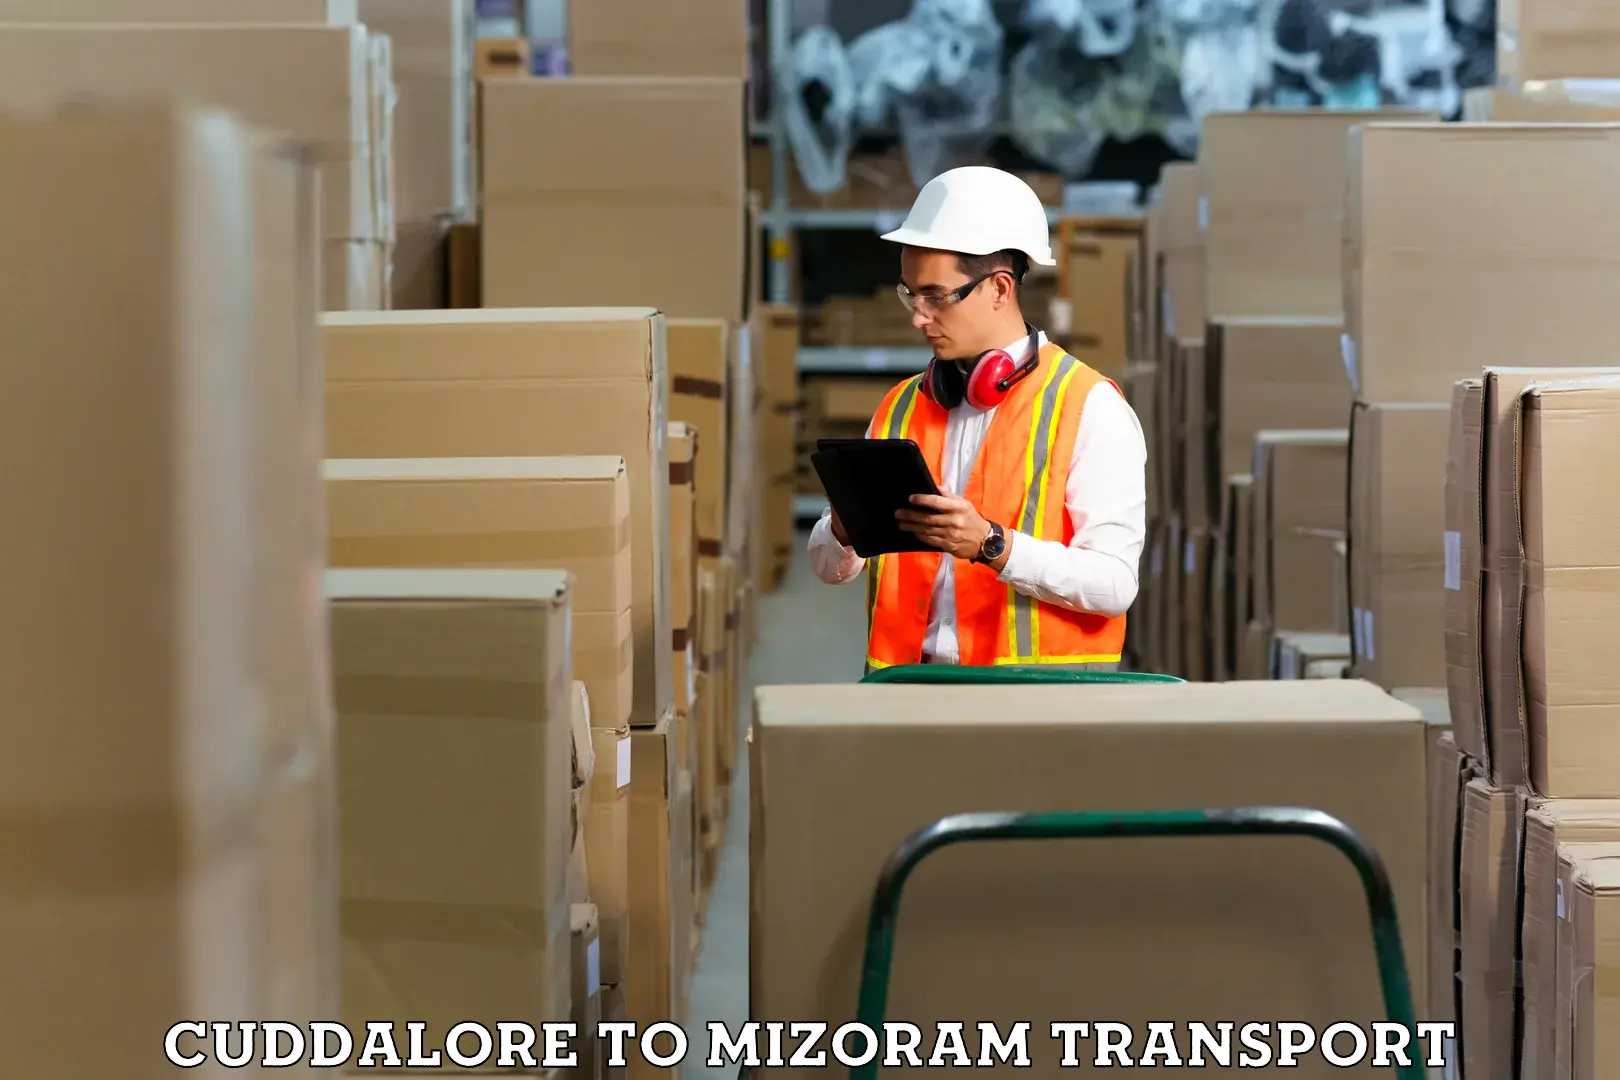 Container transport service Cuddalore to Mizoram